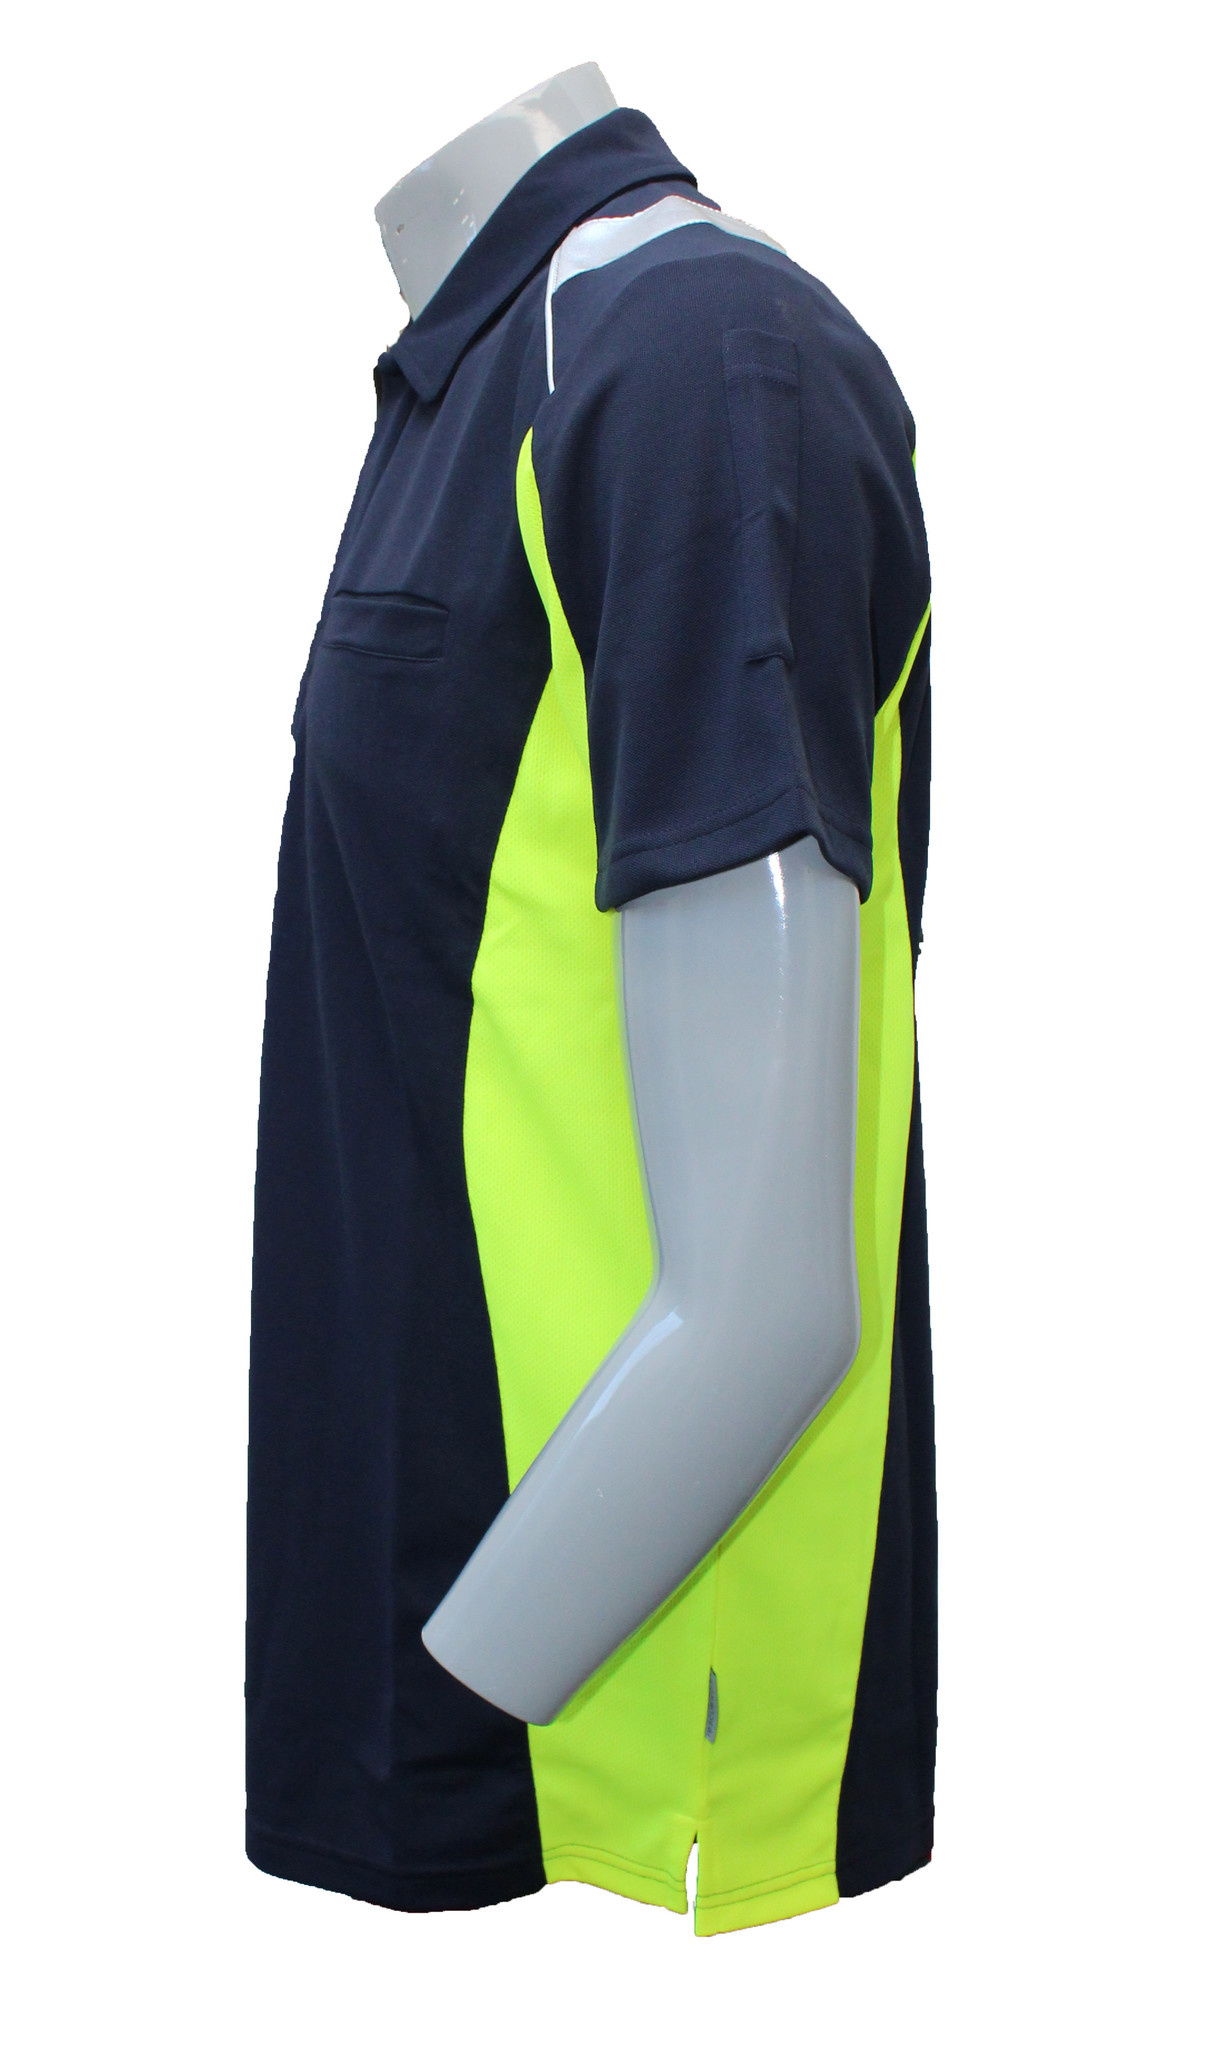 Rescuewear Damenpolo neongelb marineblau /